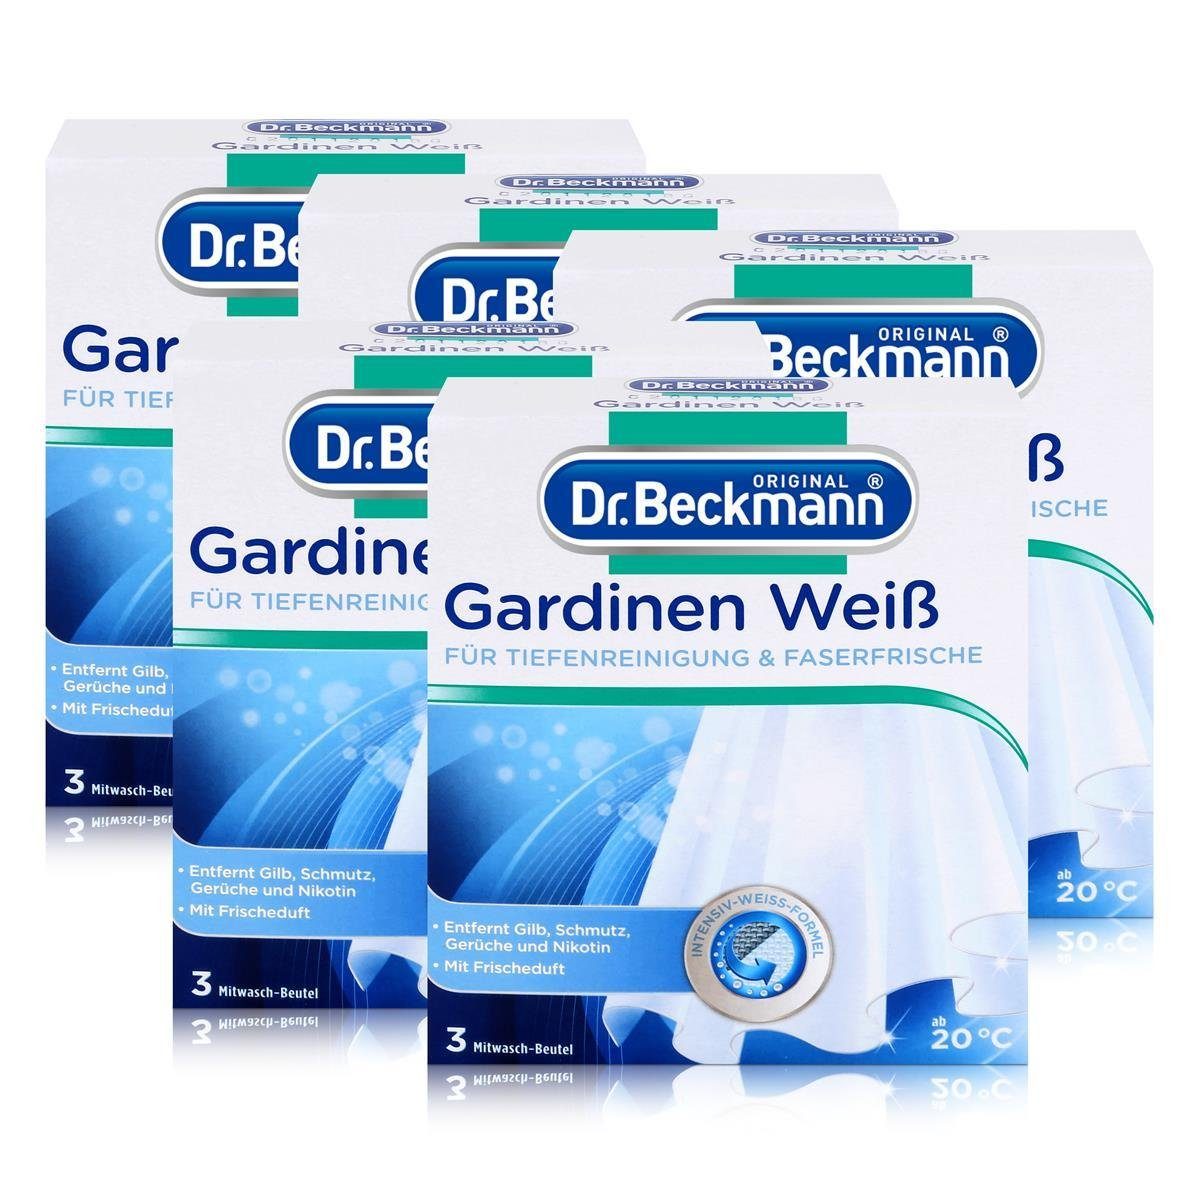 Dr. Beckmann 5x Dr. Beckmann Gardinen Weiß 120g - Intensives Weiß & Faserfrische Spezialwaschmittel